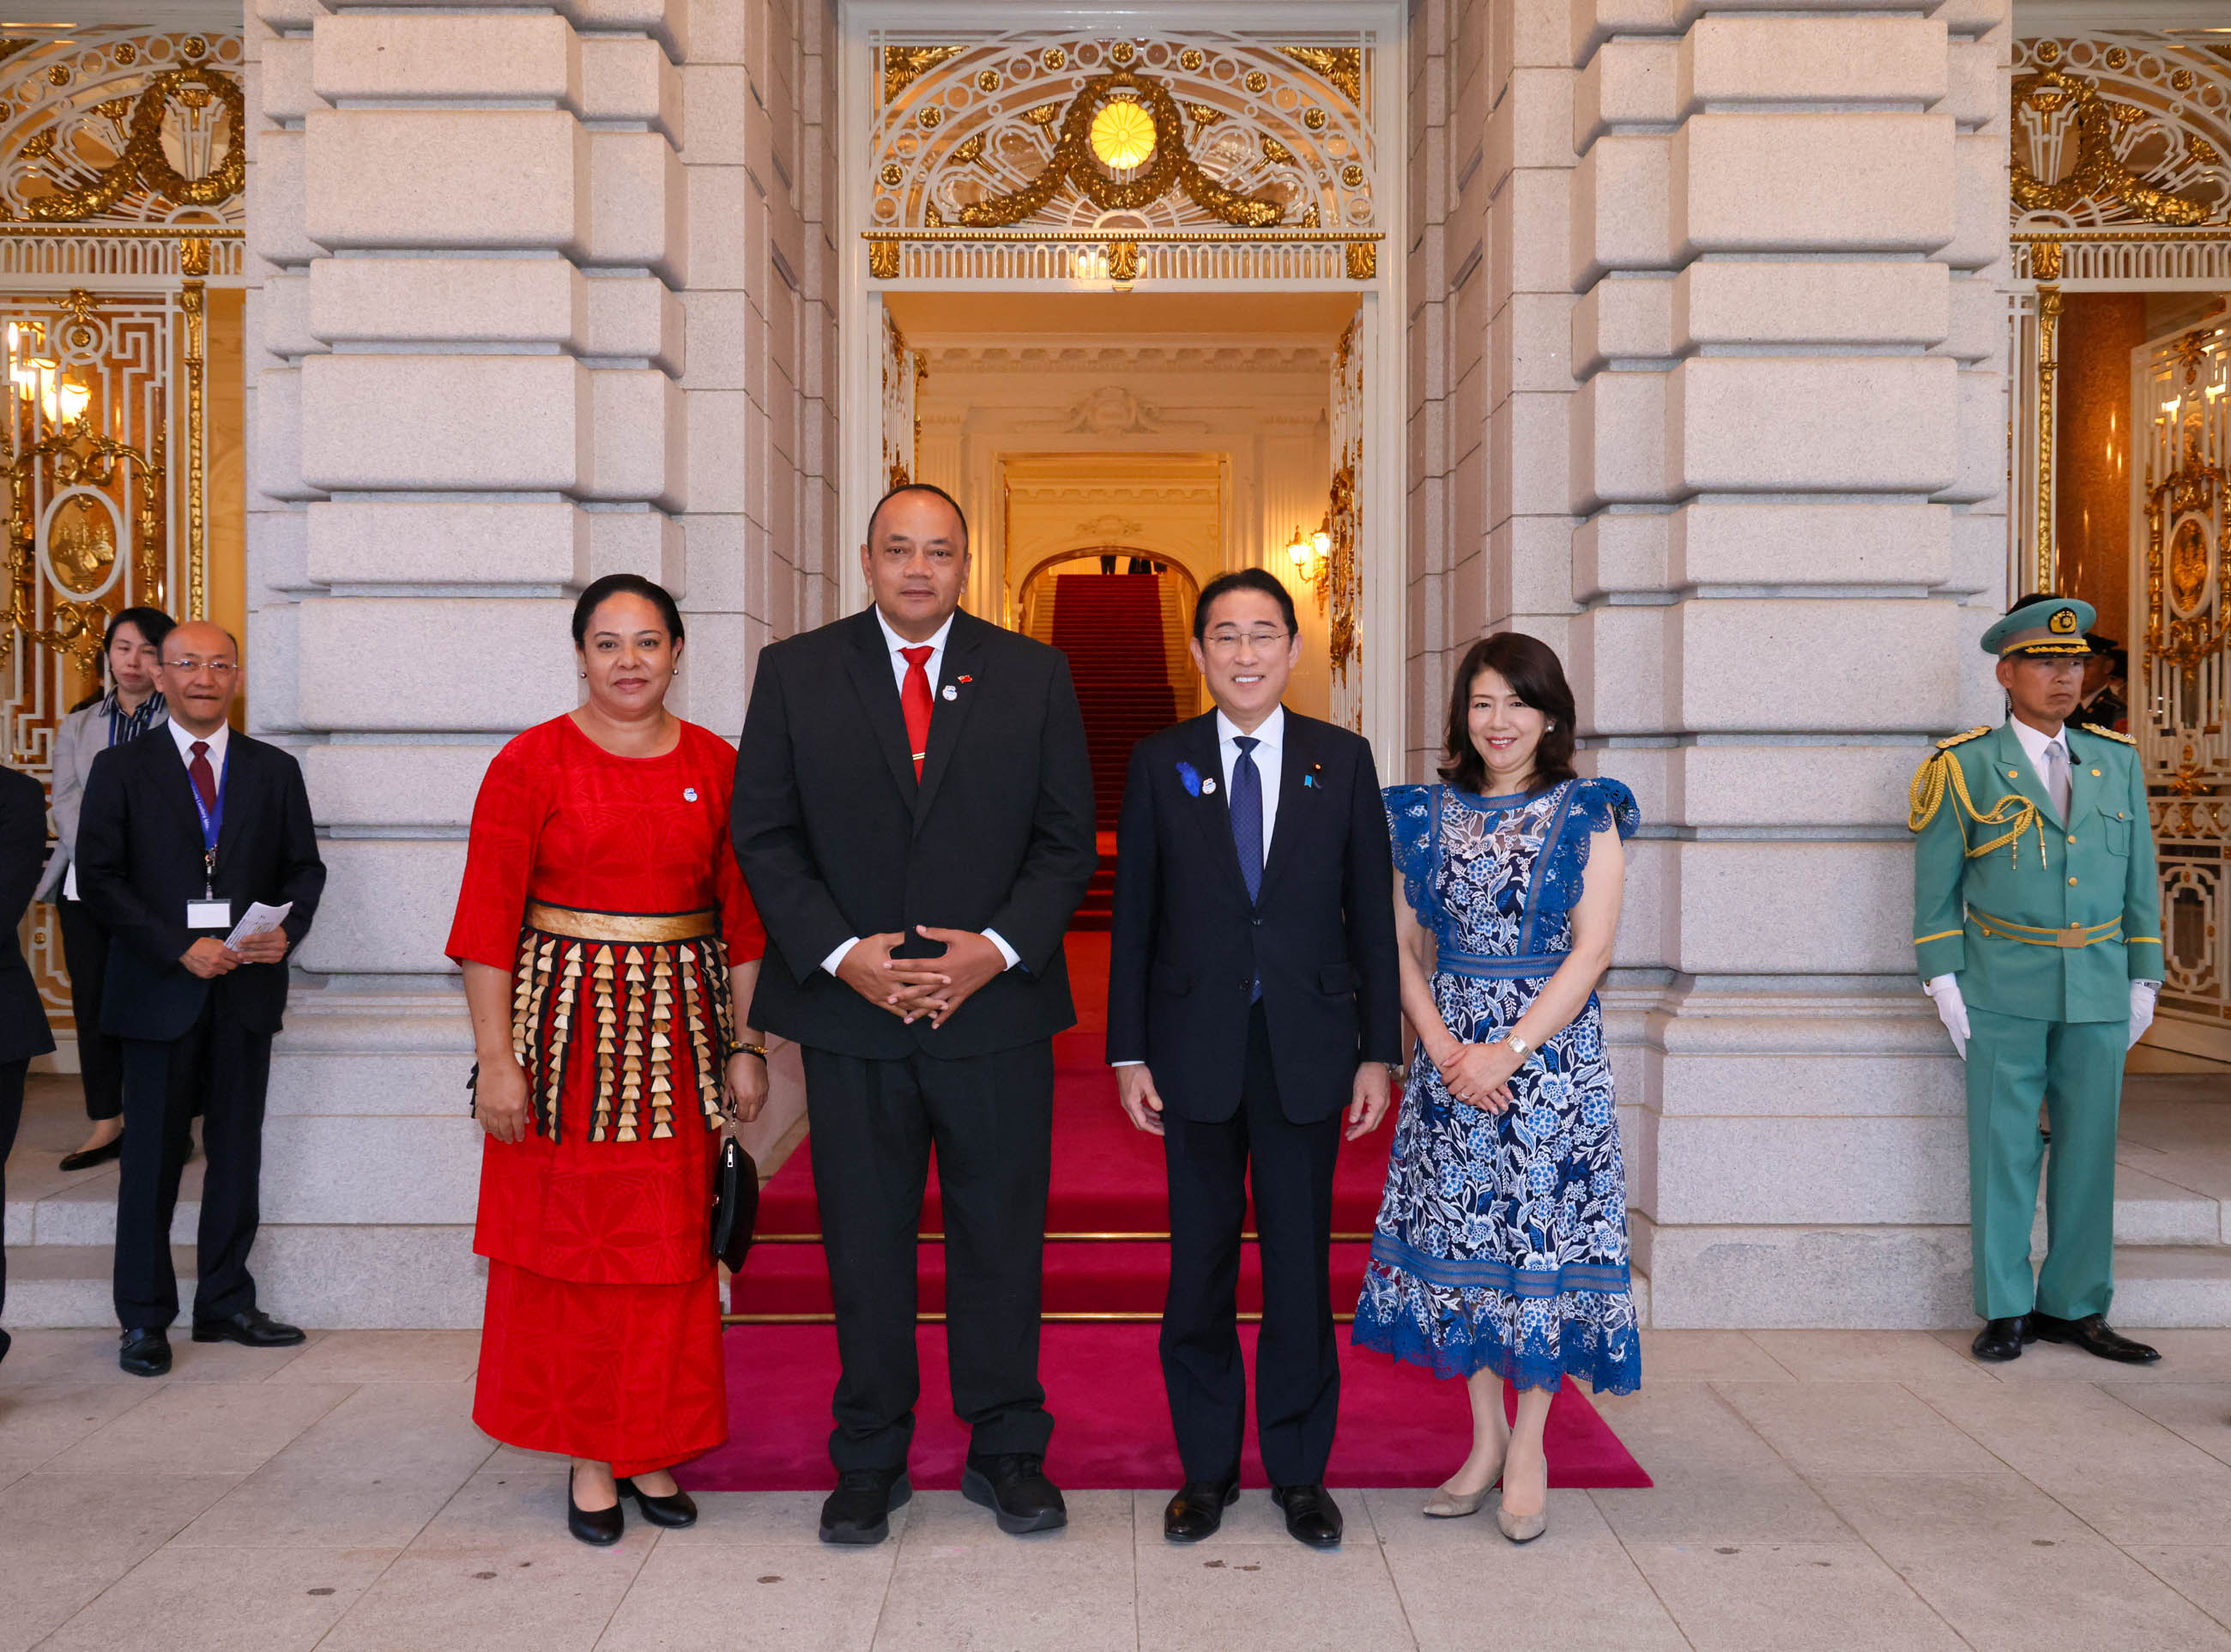 Prime Minister Kishida welcoming Hon. HU‘AKAVAMEILIKU, Prime Minister of the Kingdom of Tonga and Mrs. HU‘AKAVAMEILIKU 